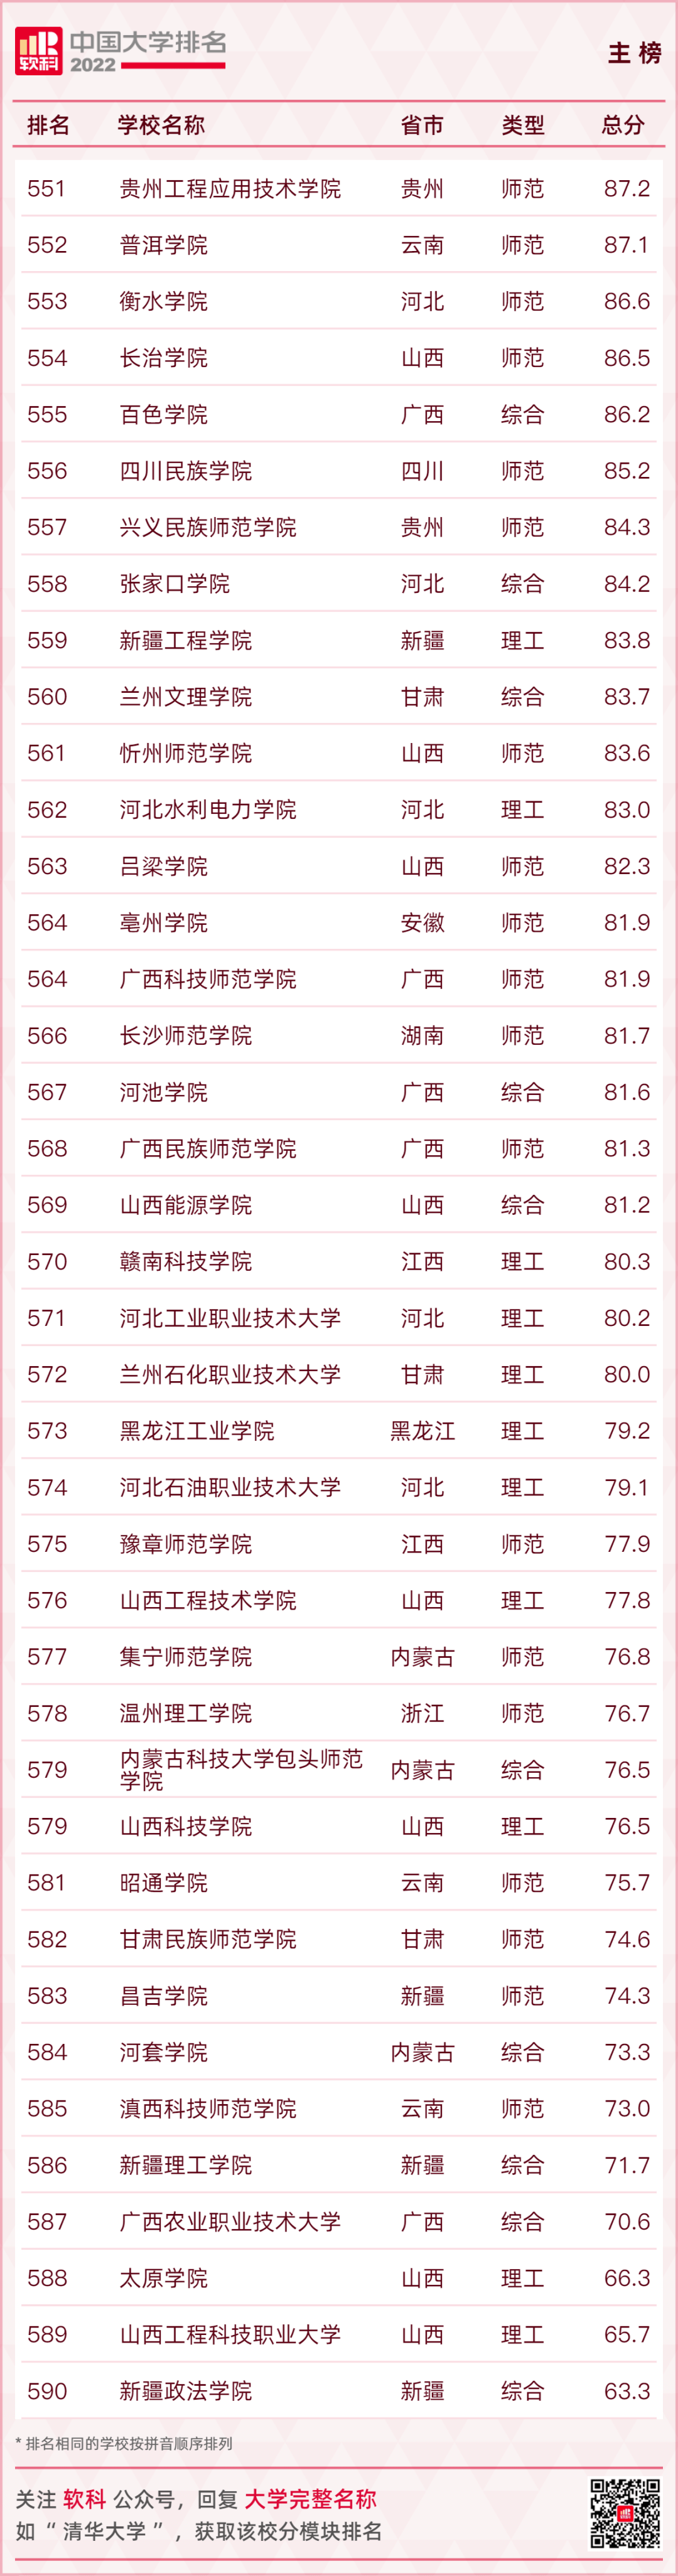 高考录取中权威！2022“中国大学排名”正式发布（附表）